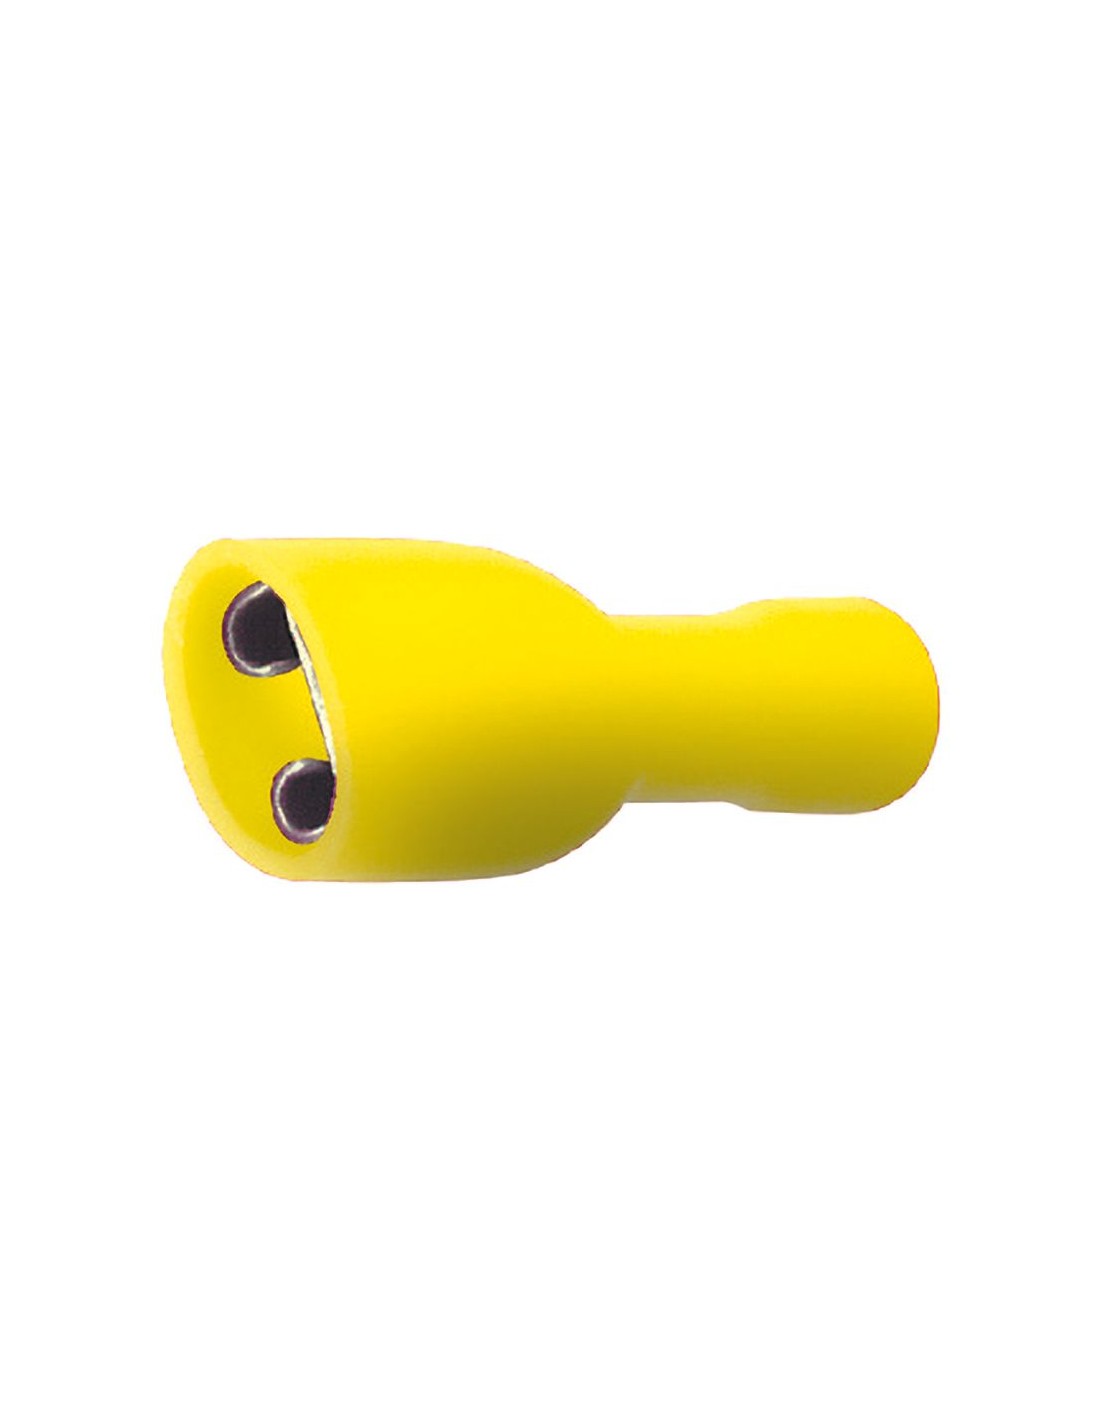 Faston isolato femmina 6,35mm 24A - giallo